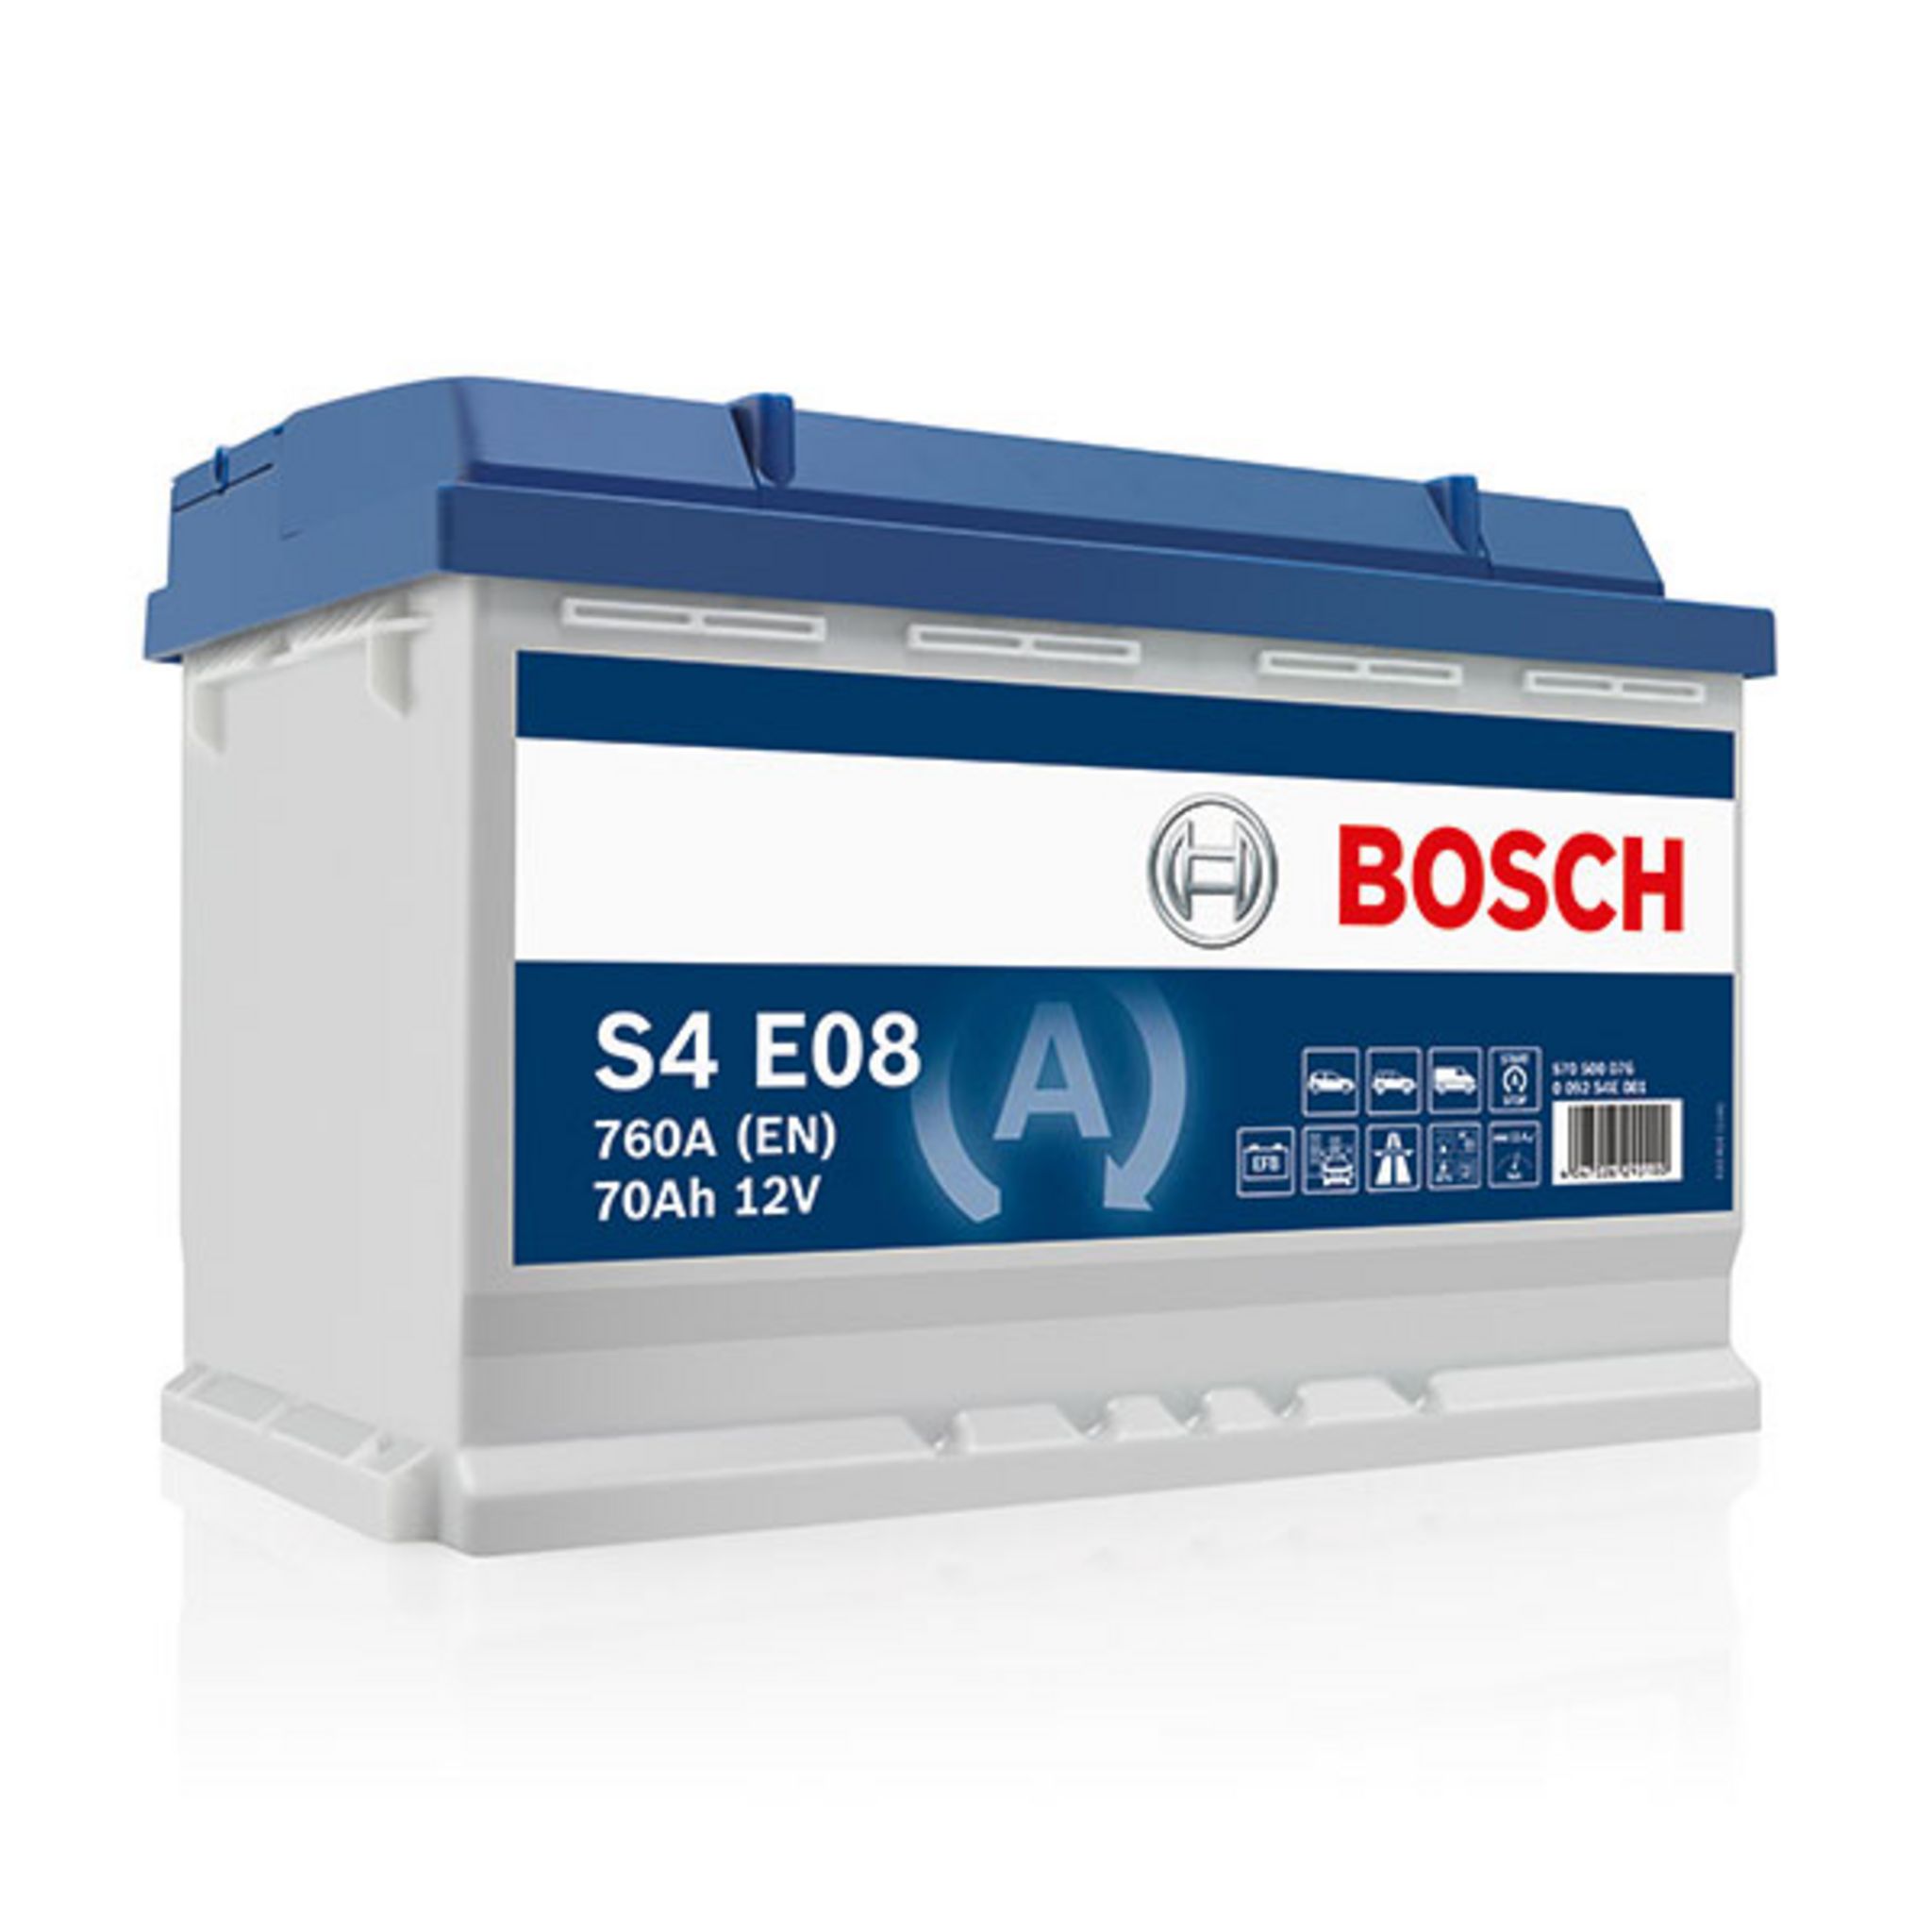  Bosch S5A08 - Batterie Auto - 70A/h - 760A - Technologie AGM -  adaptée aux Véhicules avec Start/Stop